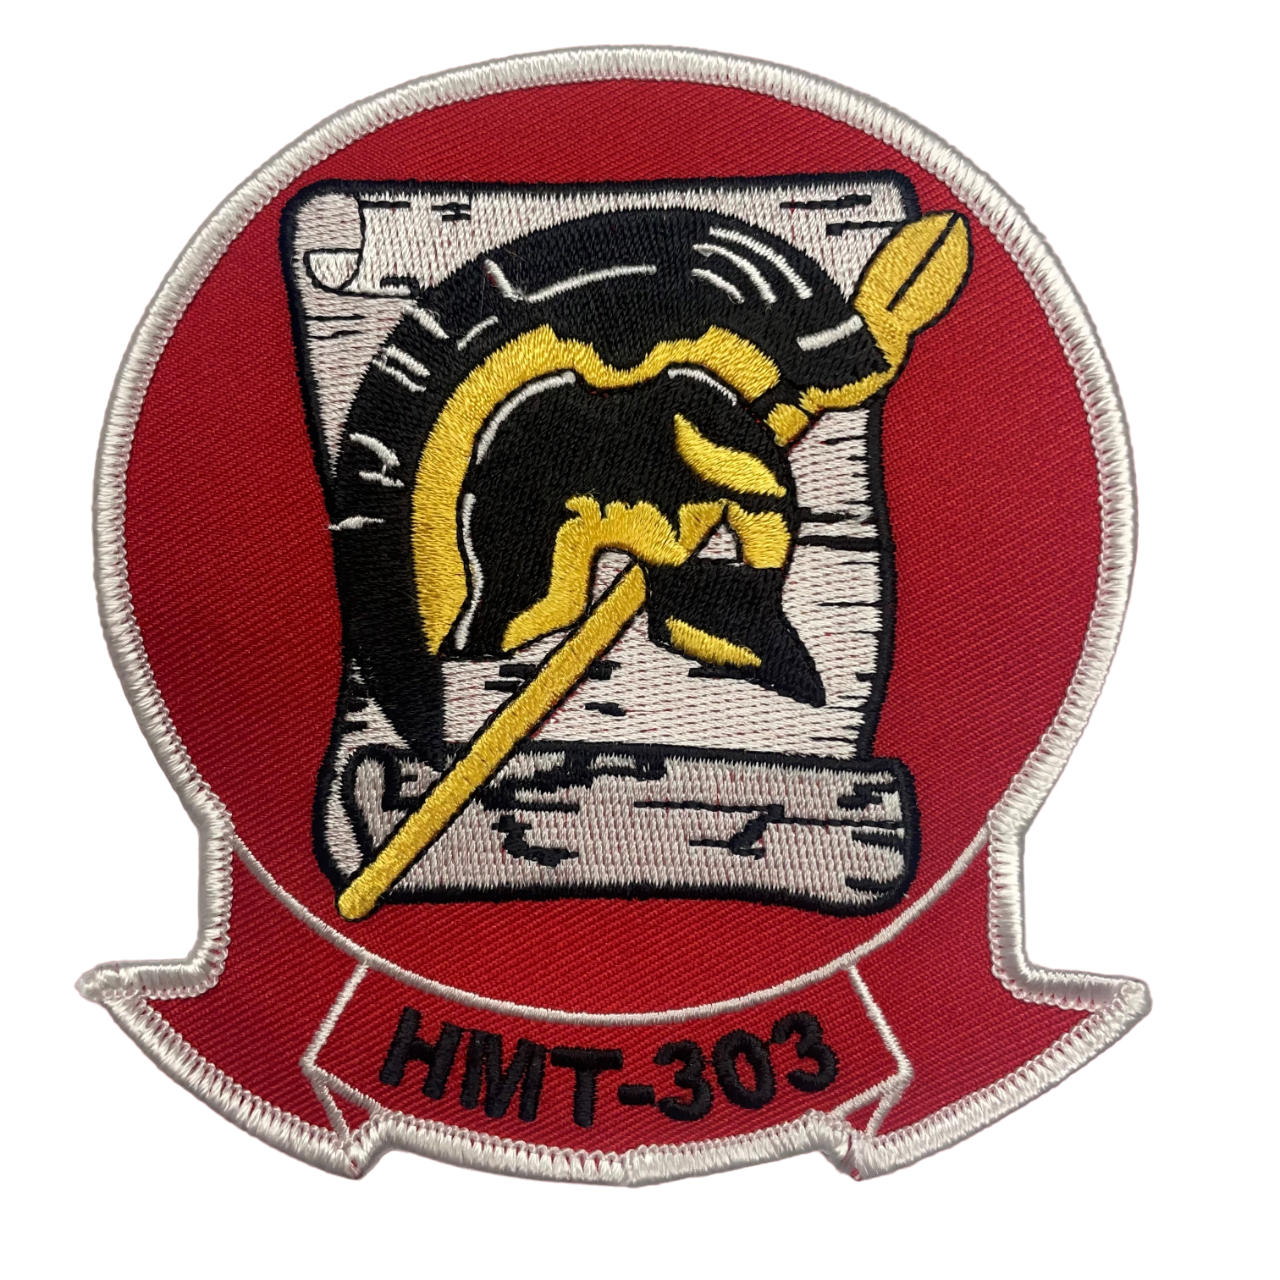 HMT-303 Atlas Squadron - USMC Patch